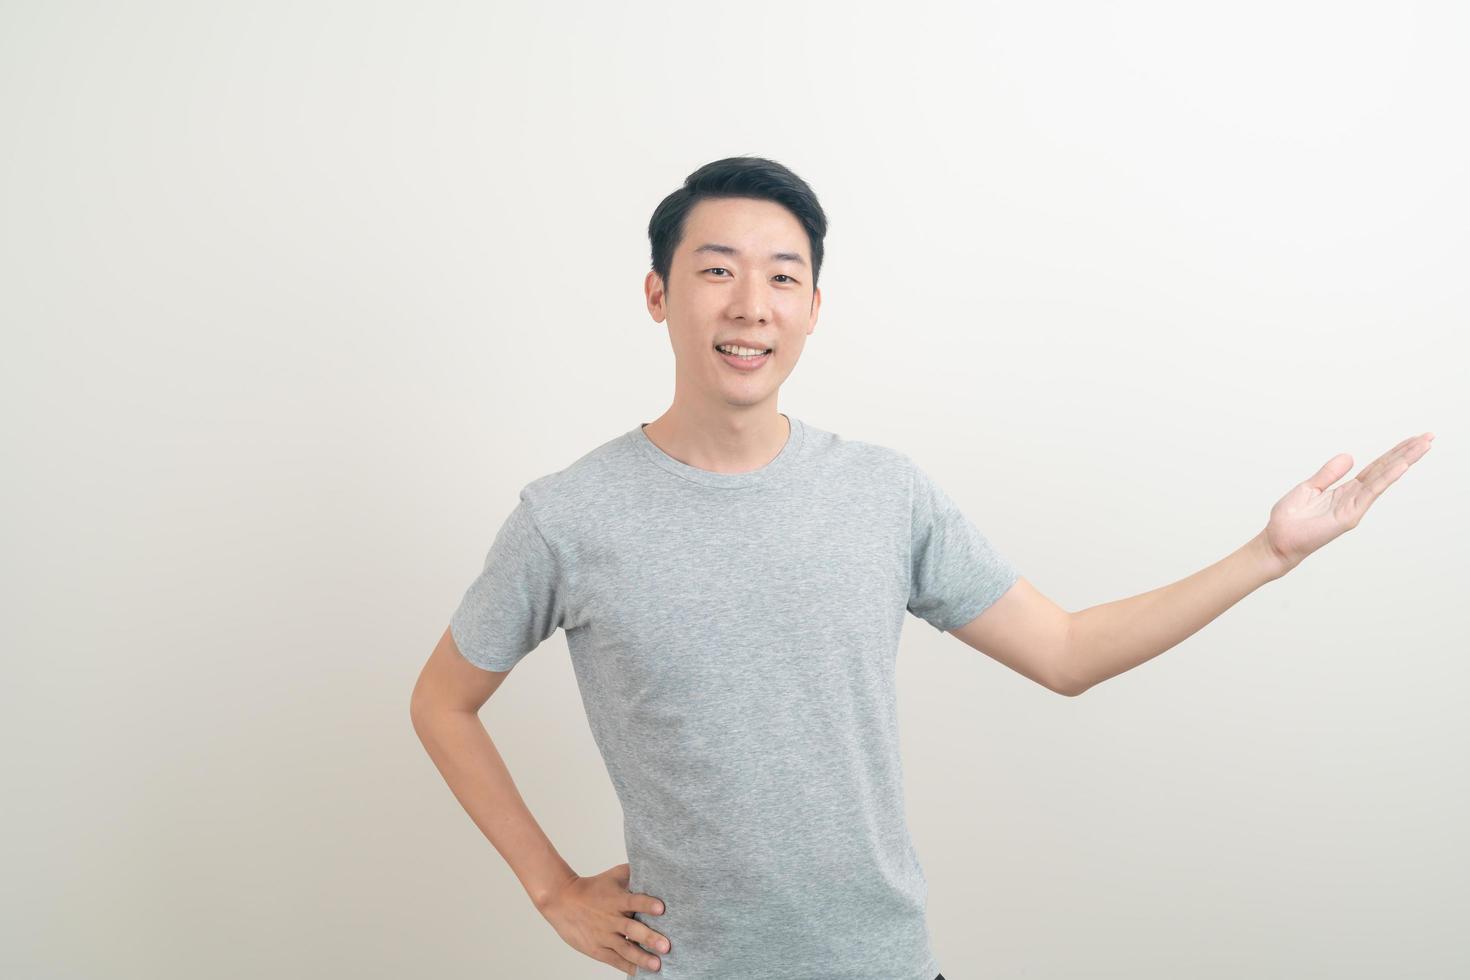 homme asiatique avec la main pointant ou présentant sur fond blanc photo